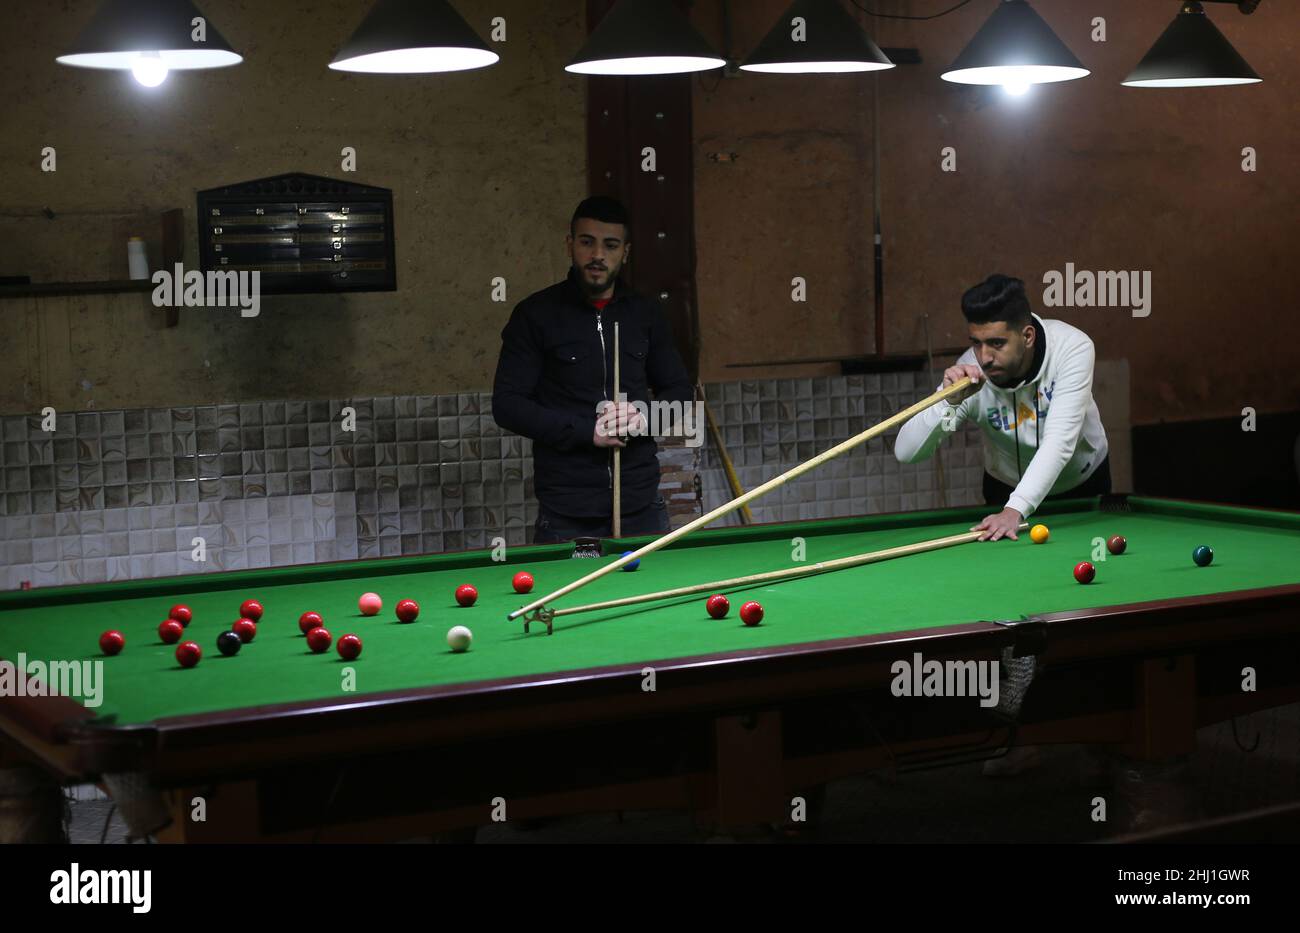 Gaza. 26th Jan 2022. Il giovane palestinese Ahmed Nasr (R) gioca a snooker all'interno di un club sportivo locale nella città meridionale della striscia di Gaza di Rafah, il 26 gennaio 2022. Nasr, 22 anni, imparò a giocare a biliardo e snooker da suo padre, poi imparò le regole del gioco attraverso i video di YouTube. Recentemente ha vinto il primo posto nel campionato di snooker della striscia di Gaza, che lo ha qualificato per il campionato di classificazione a livello della squadra palestinese. Credit: Khaled Omar/Xinhua/Alamy Live News Foto Stock